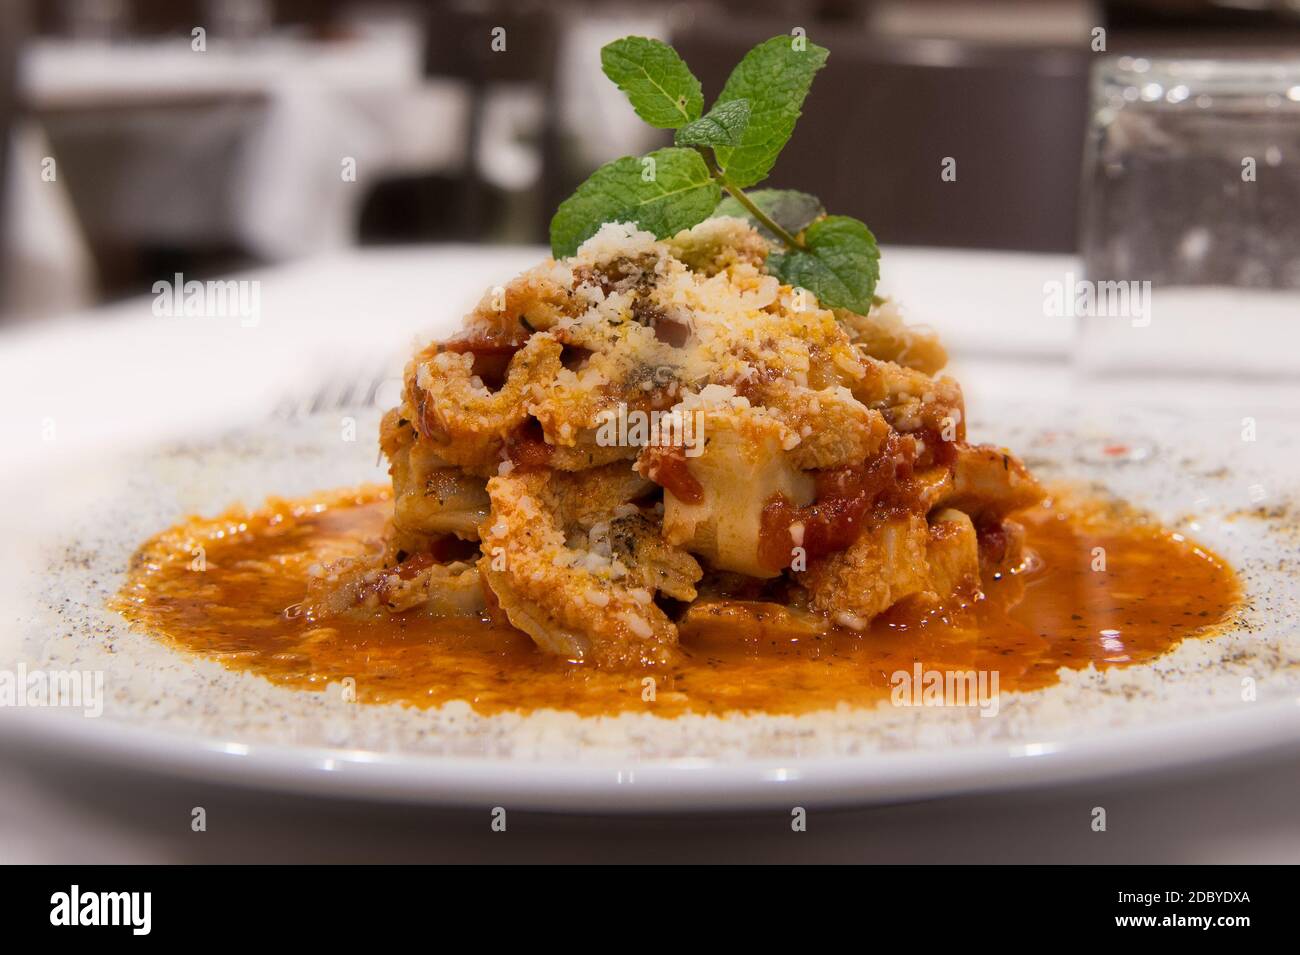 tripe meat called in Rome Trippa alla romana con menta, typical specialties from Lazio region Stock Photo